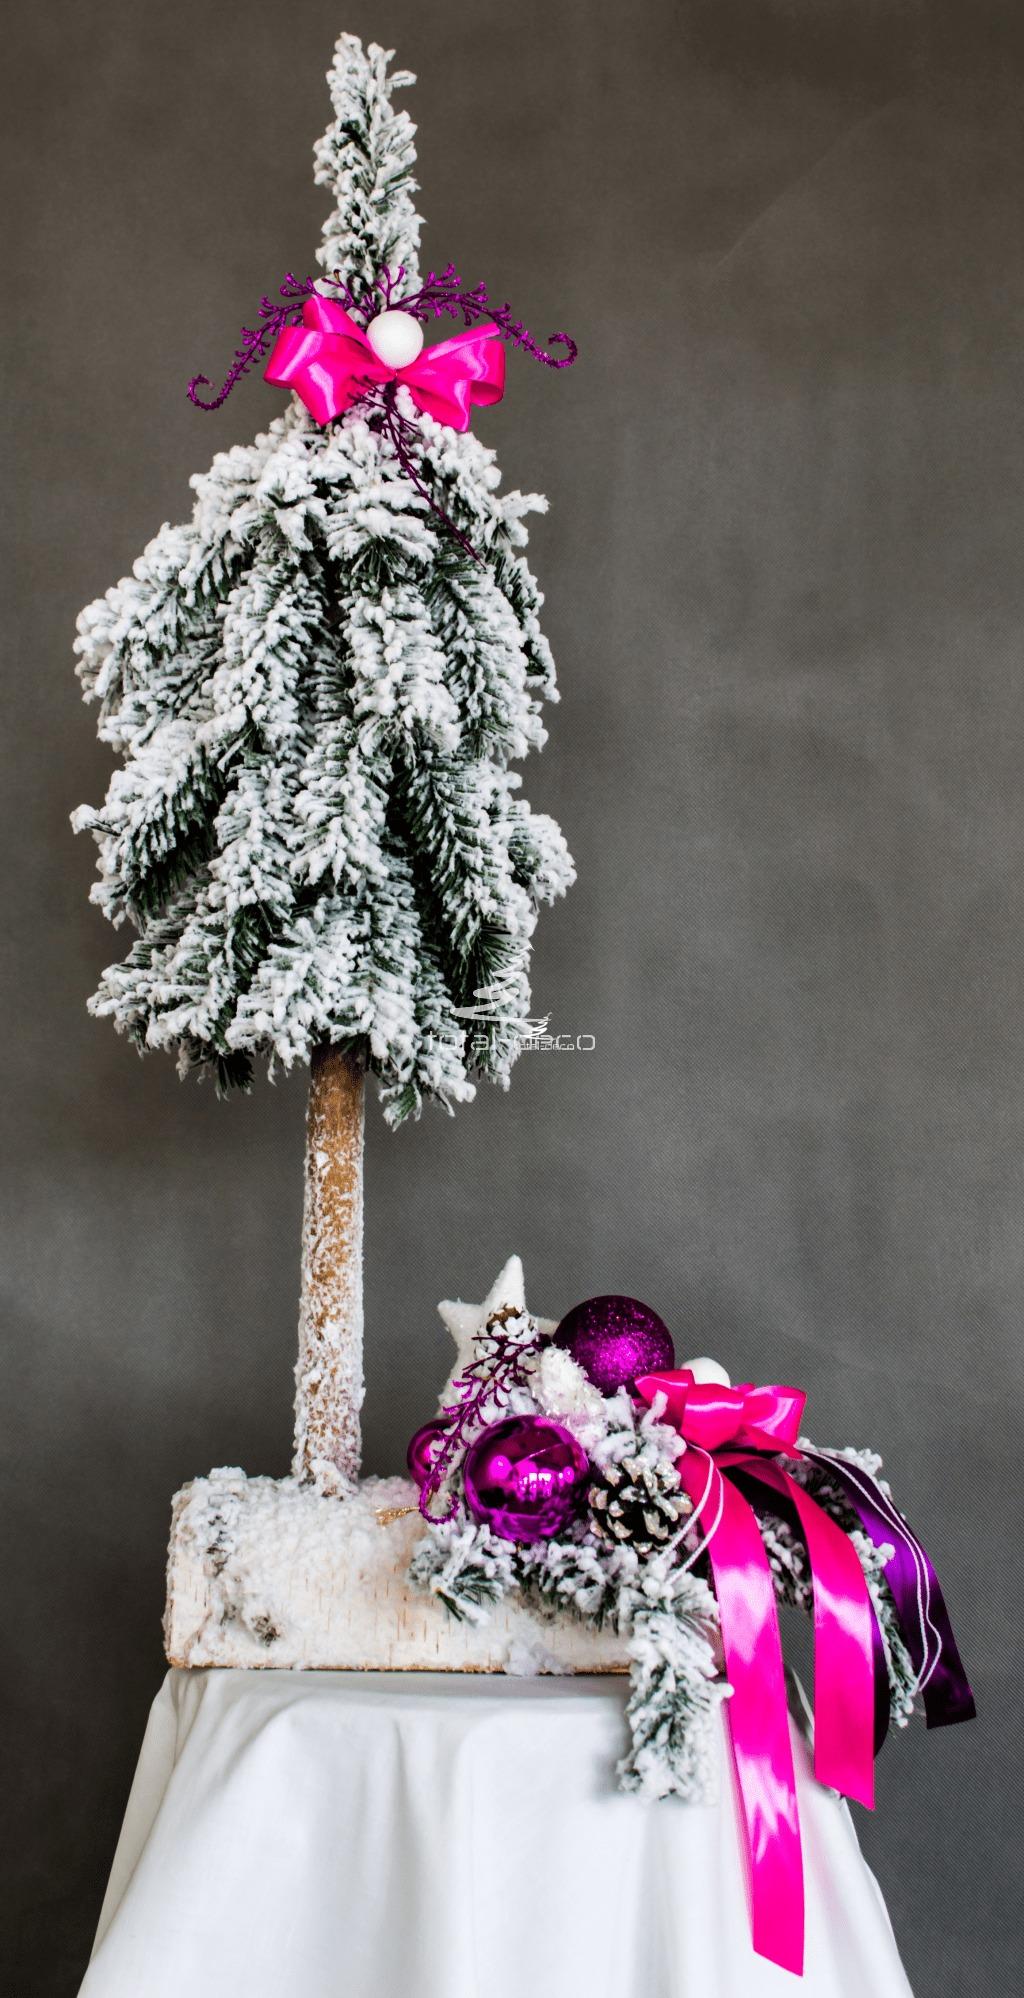 ośnieżona nowoczesna oryginalna choinka i stroik oprószona delikatnym śniegiem ubrana na różowo biało na drewnianej podstawie kokarda bombki dekoracja świąteczna ozdoba bożonarodzeniowa